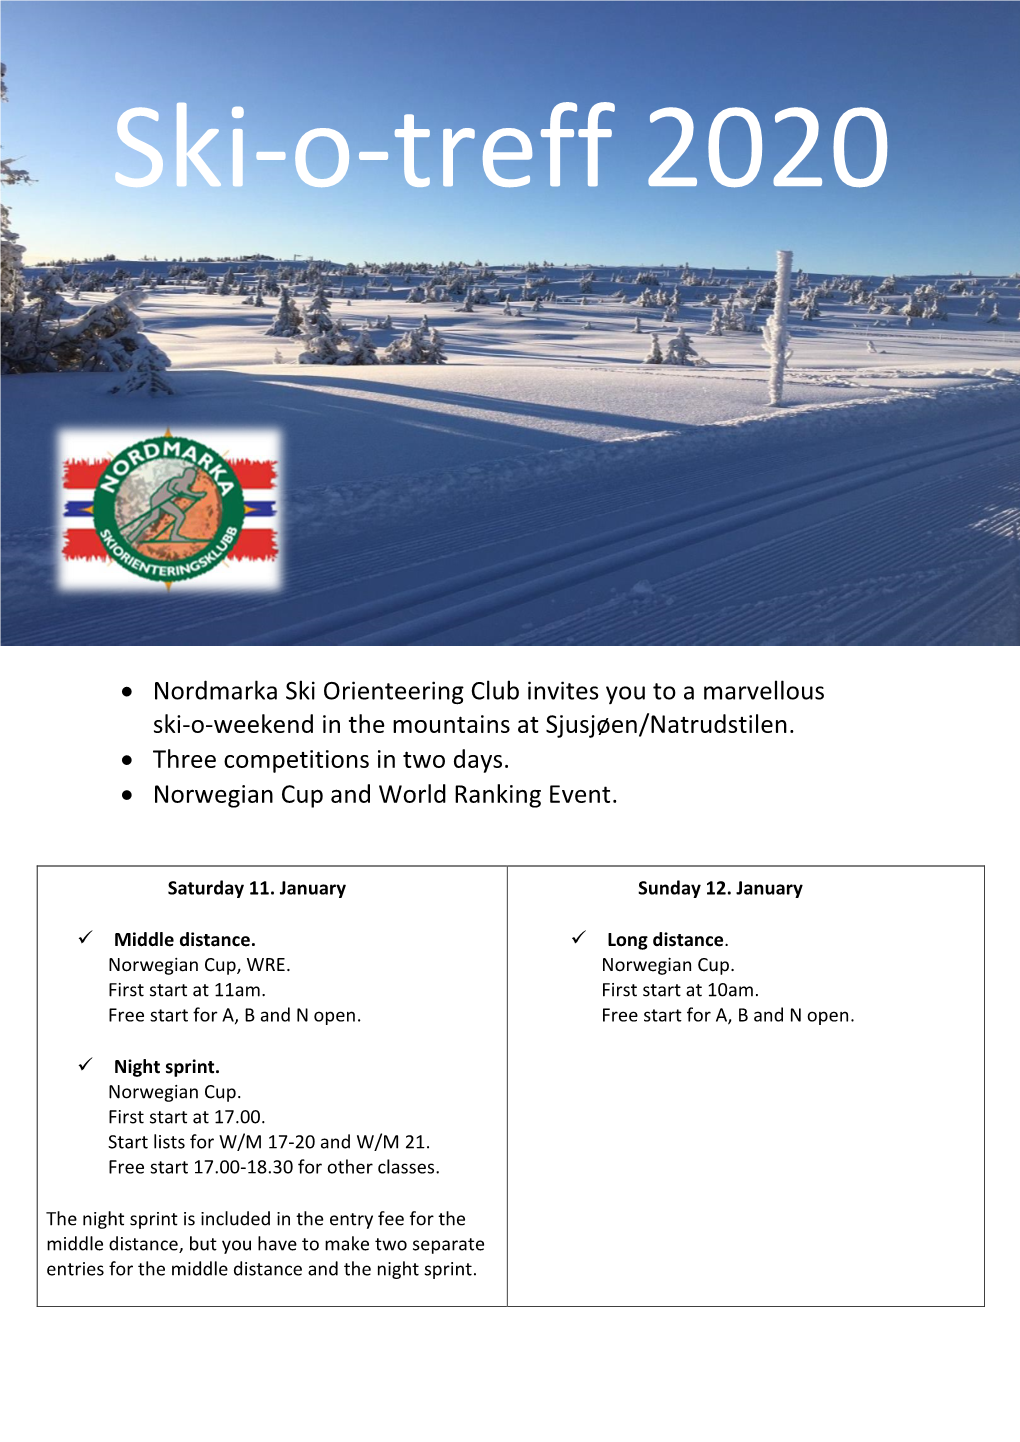 Nordmarka Ski Orienteering Club Invites You to a Marvellous Ski-O-Weekend in the Mountains at Sjusjøen/Natrudstilen